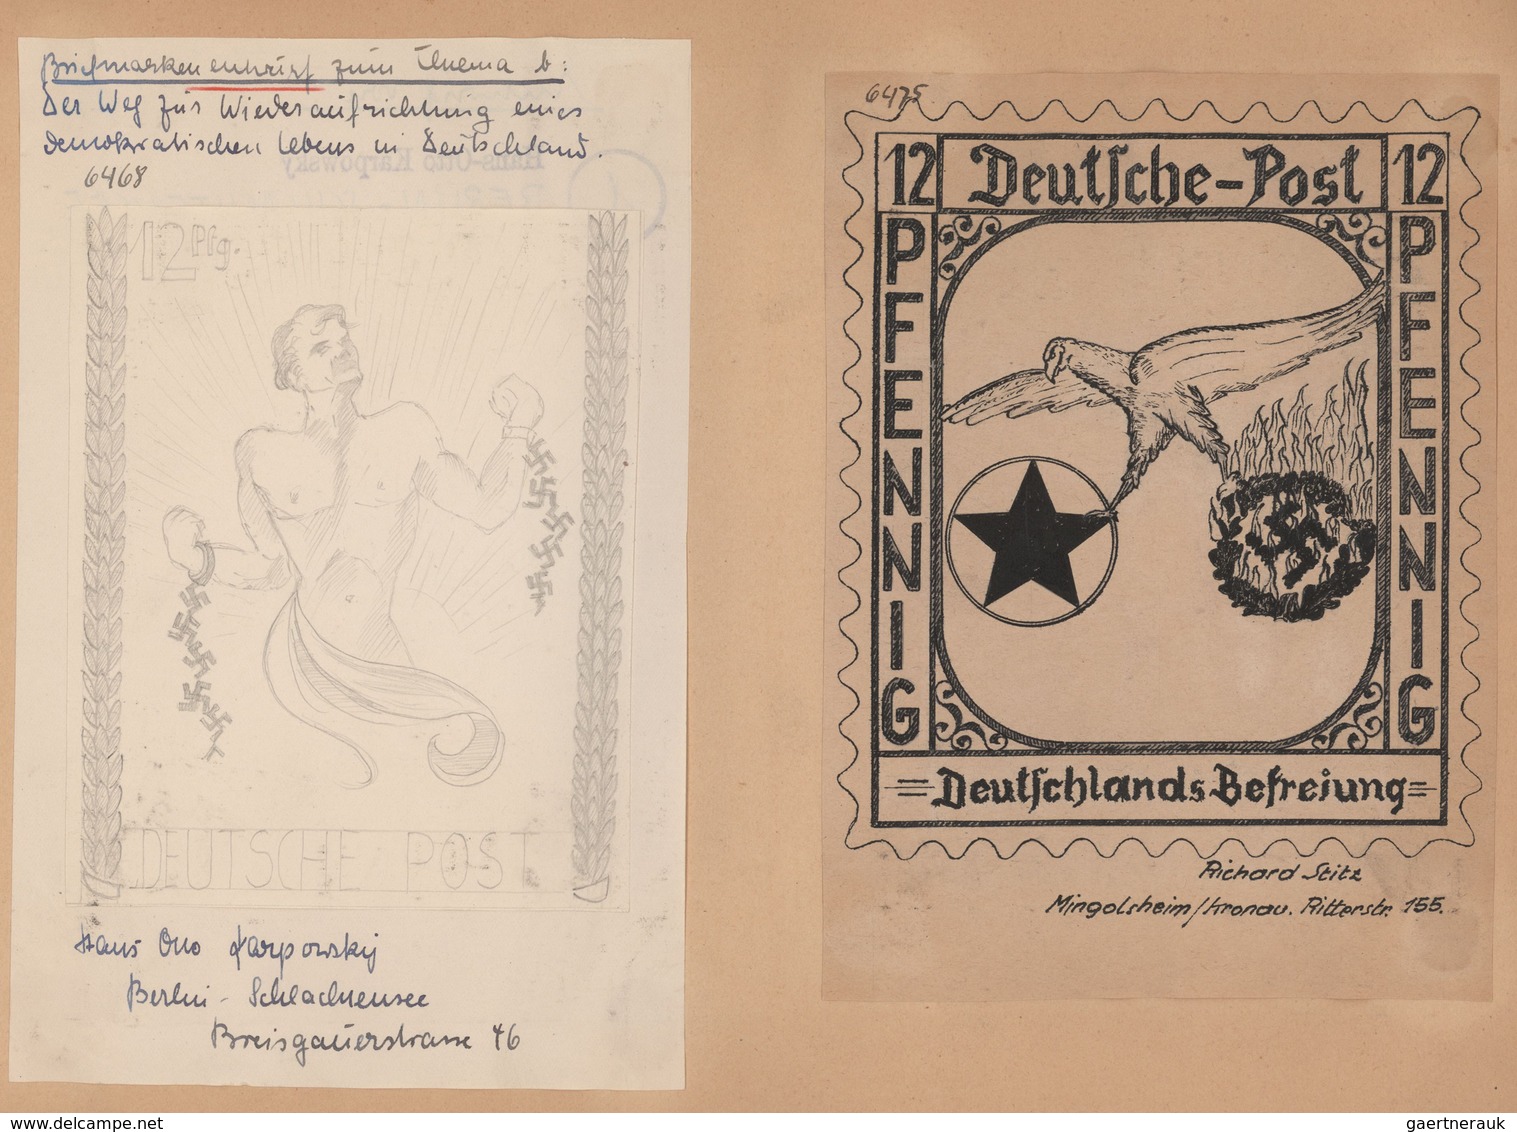 Deutschland nach 1945: 1945/46, ENTWÜRFE, Sammlung von gesamt 191 mehr oder minder kunstvollen Entwü